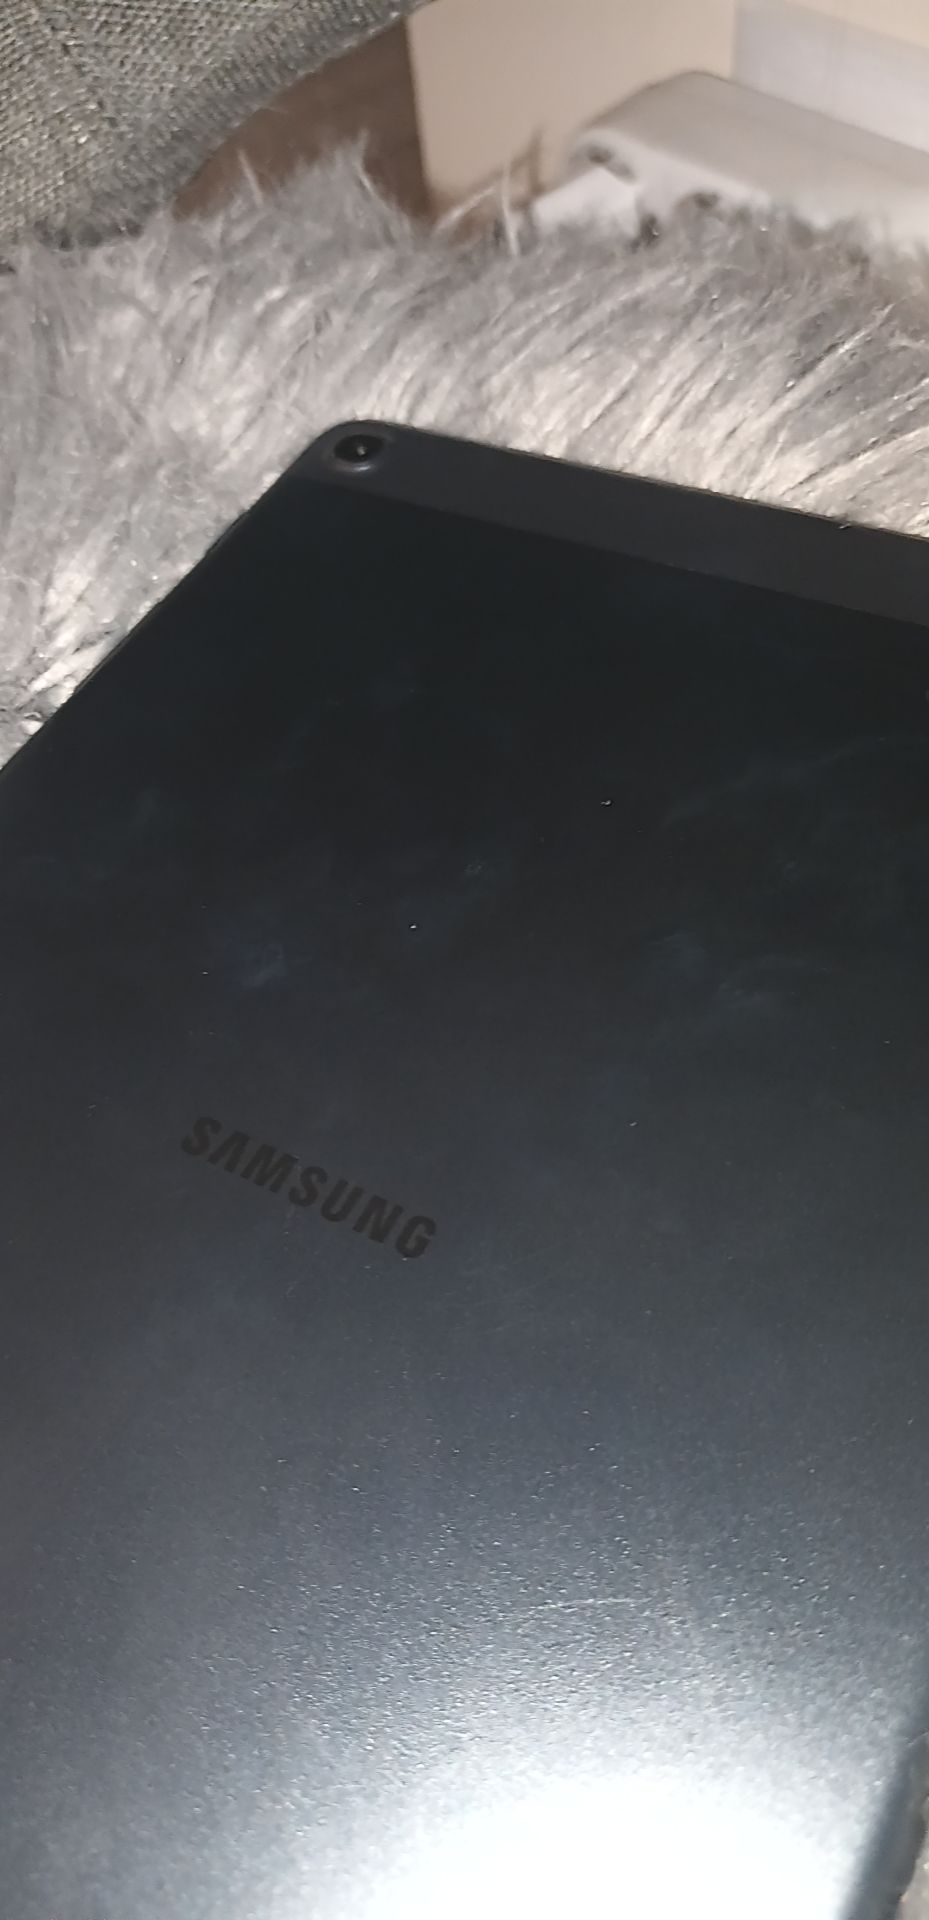 Galaxy Tab A , condiție ca nou , culoare gri cu husa potrivita